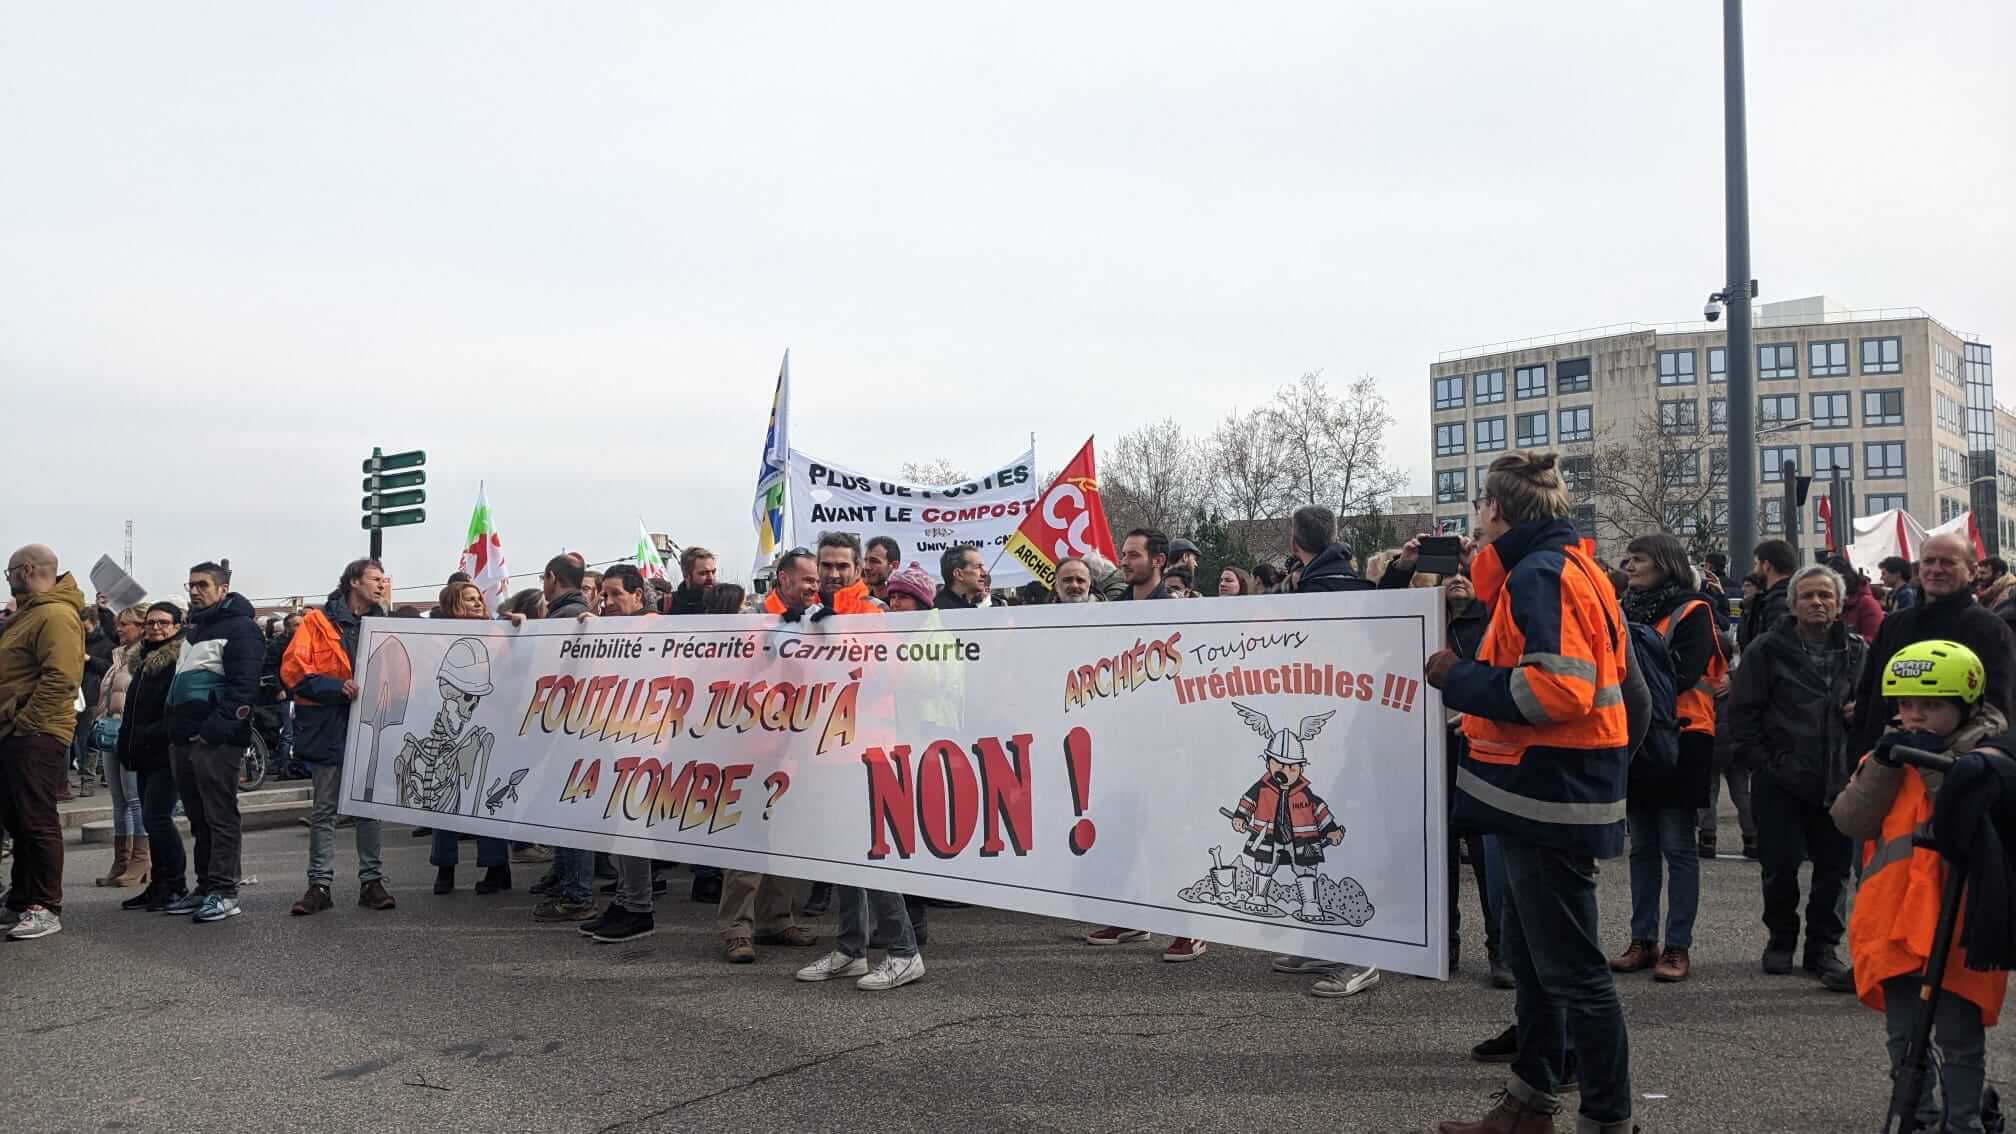 Les archéologues de l'INRAP, mobilisés contre la réforme des retraites le 7 mars. ©Laure Solé/Rue89Lyon